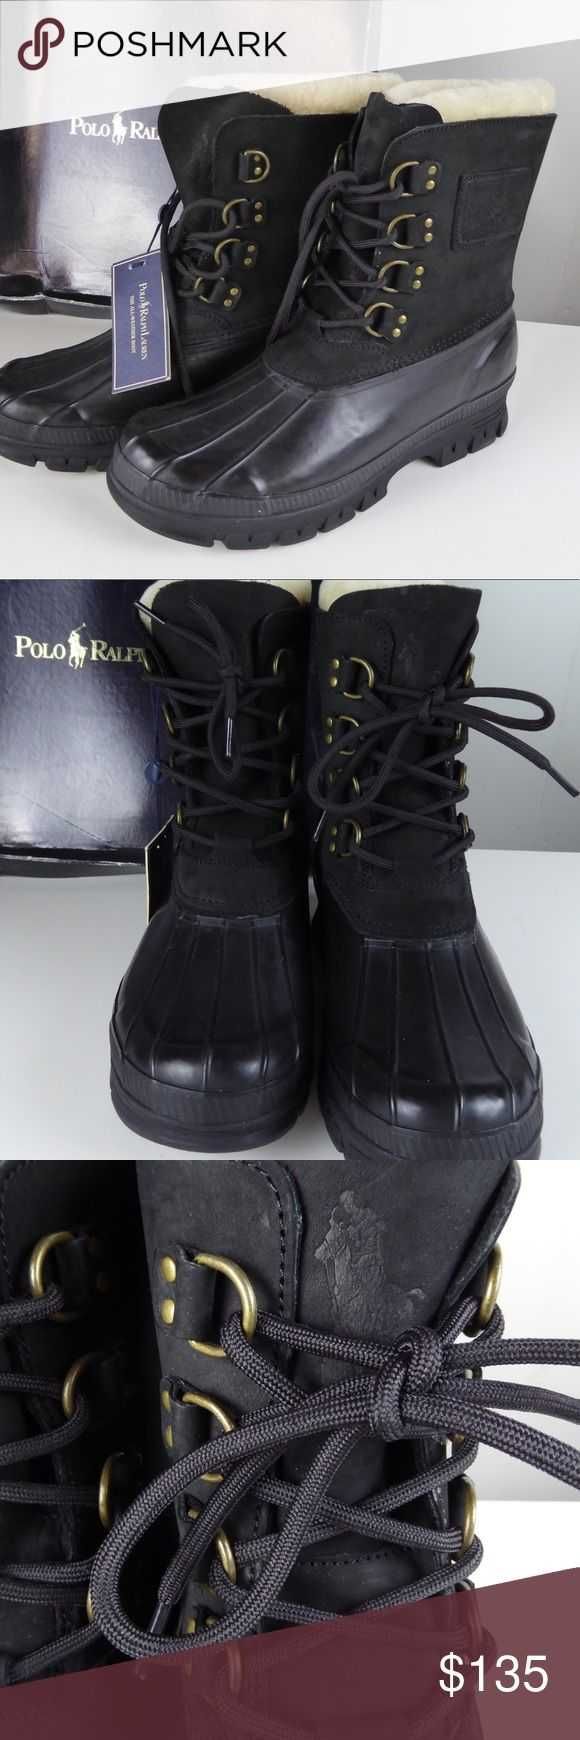 Polo Ralph Lauren Landen 41 та 40 р чорні водонепроникні черевики боти